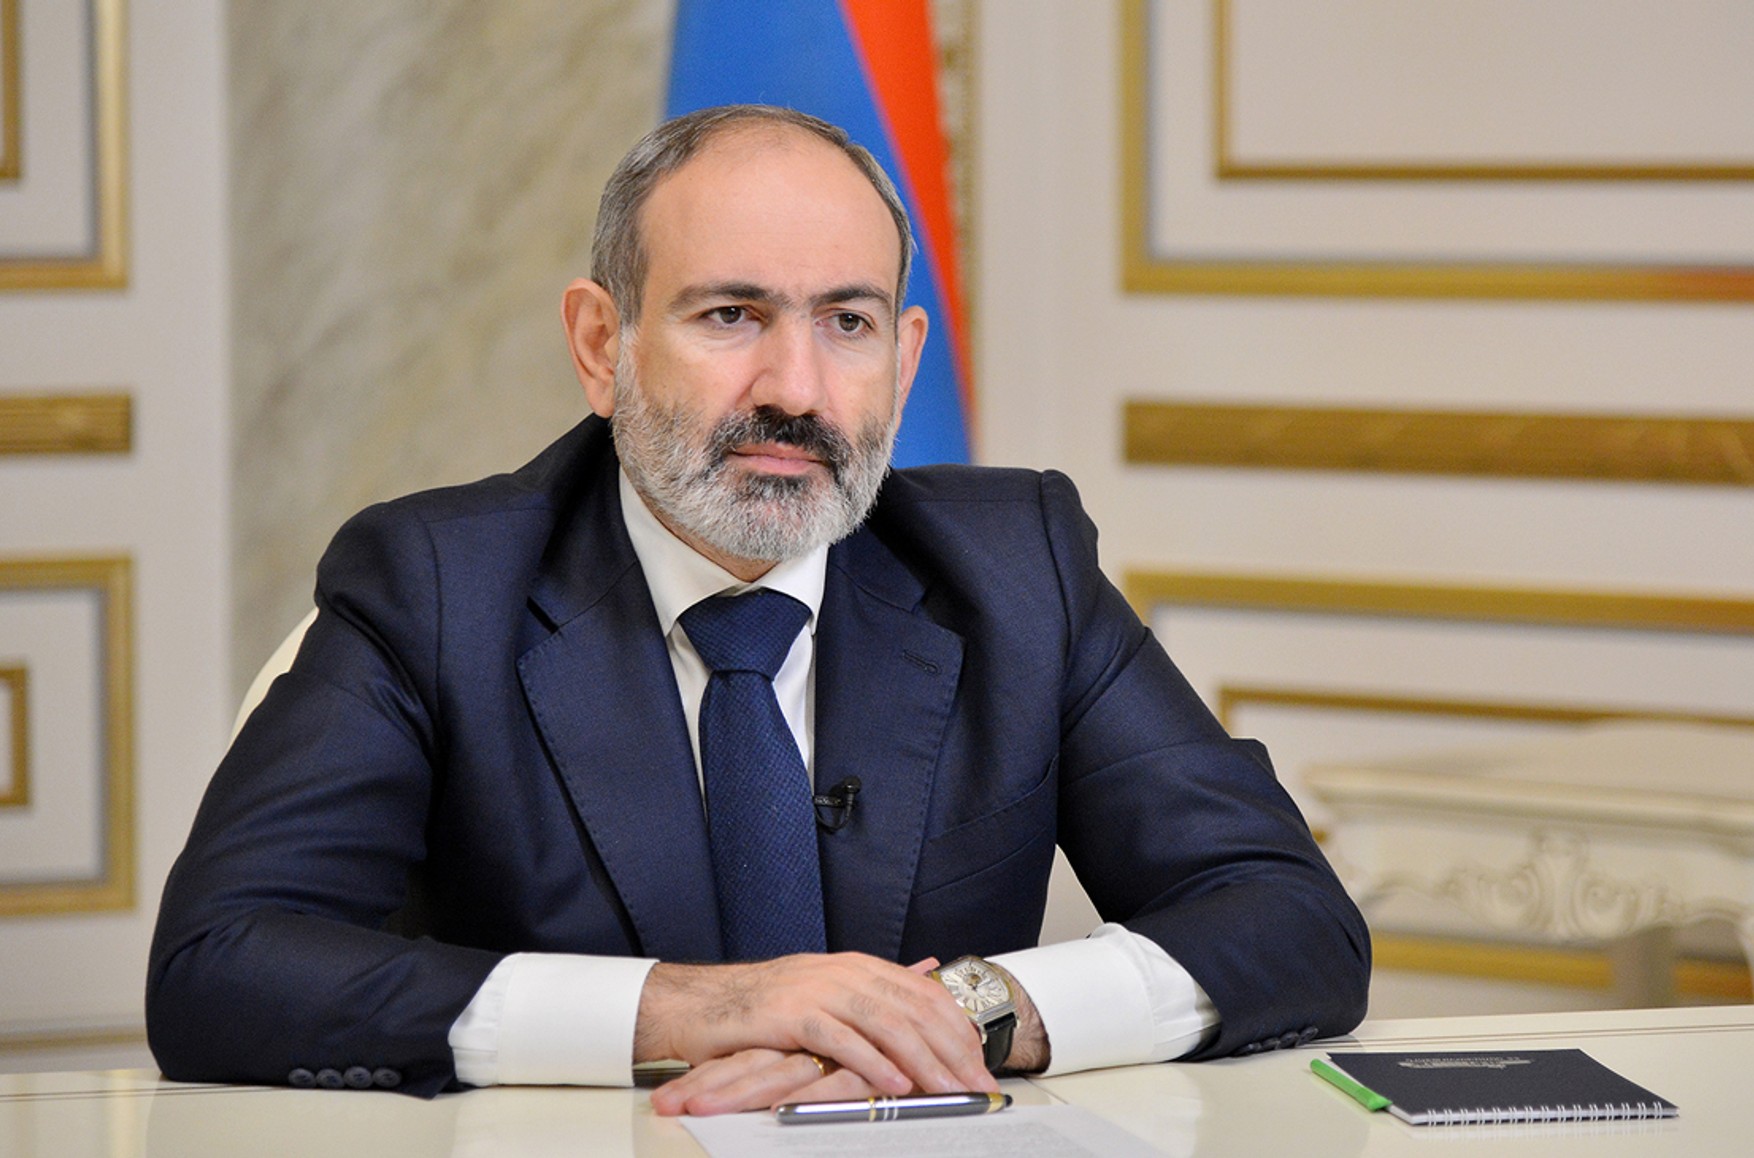 Пашинян заявил о гибели 49 армянских военных на границе с Азербайджаном